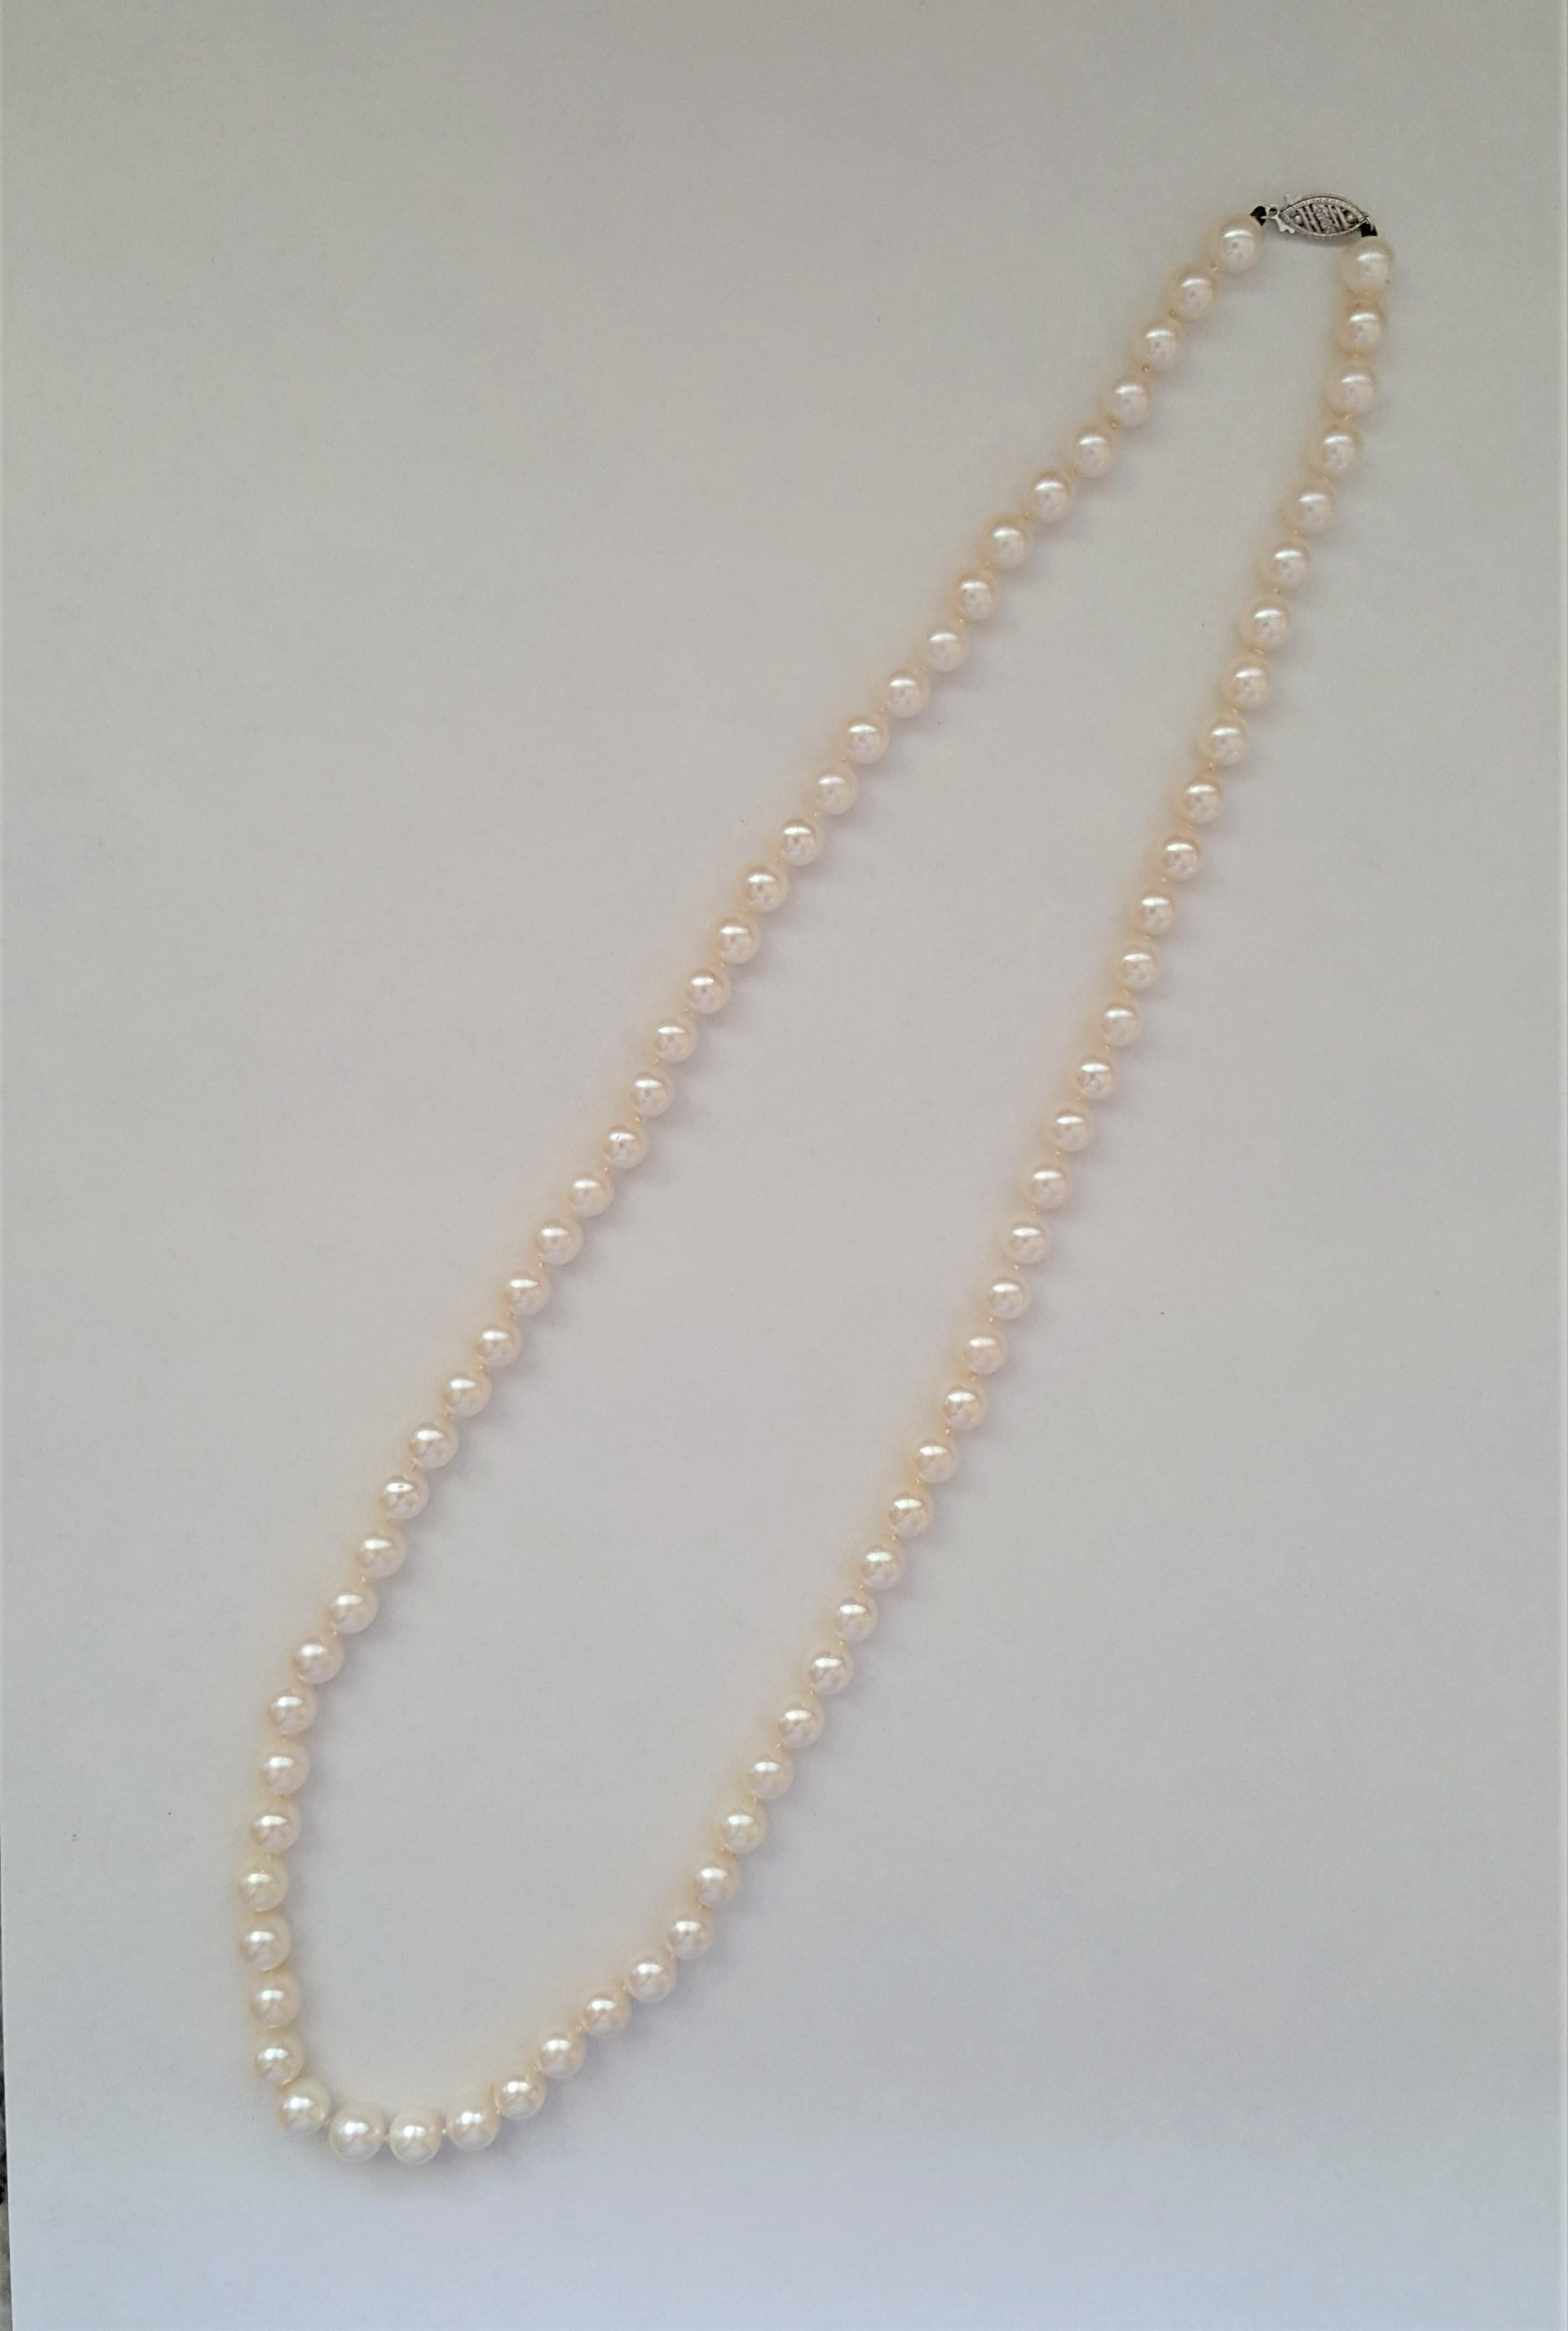 Un magnifique collier de perles blanches de culture de grade AA de 7 mm de diamètre et d'une longueur de 23 pouces. Les perles sont en très bon état ; la nacre est lustrée et propre. Les perles sont fixées à l'aide d'un fermoir en or blanc 14kt.

Si